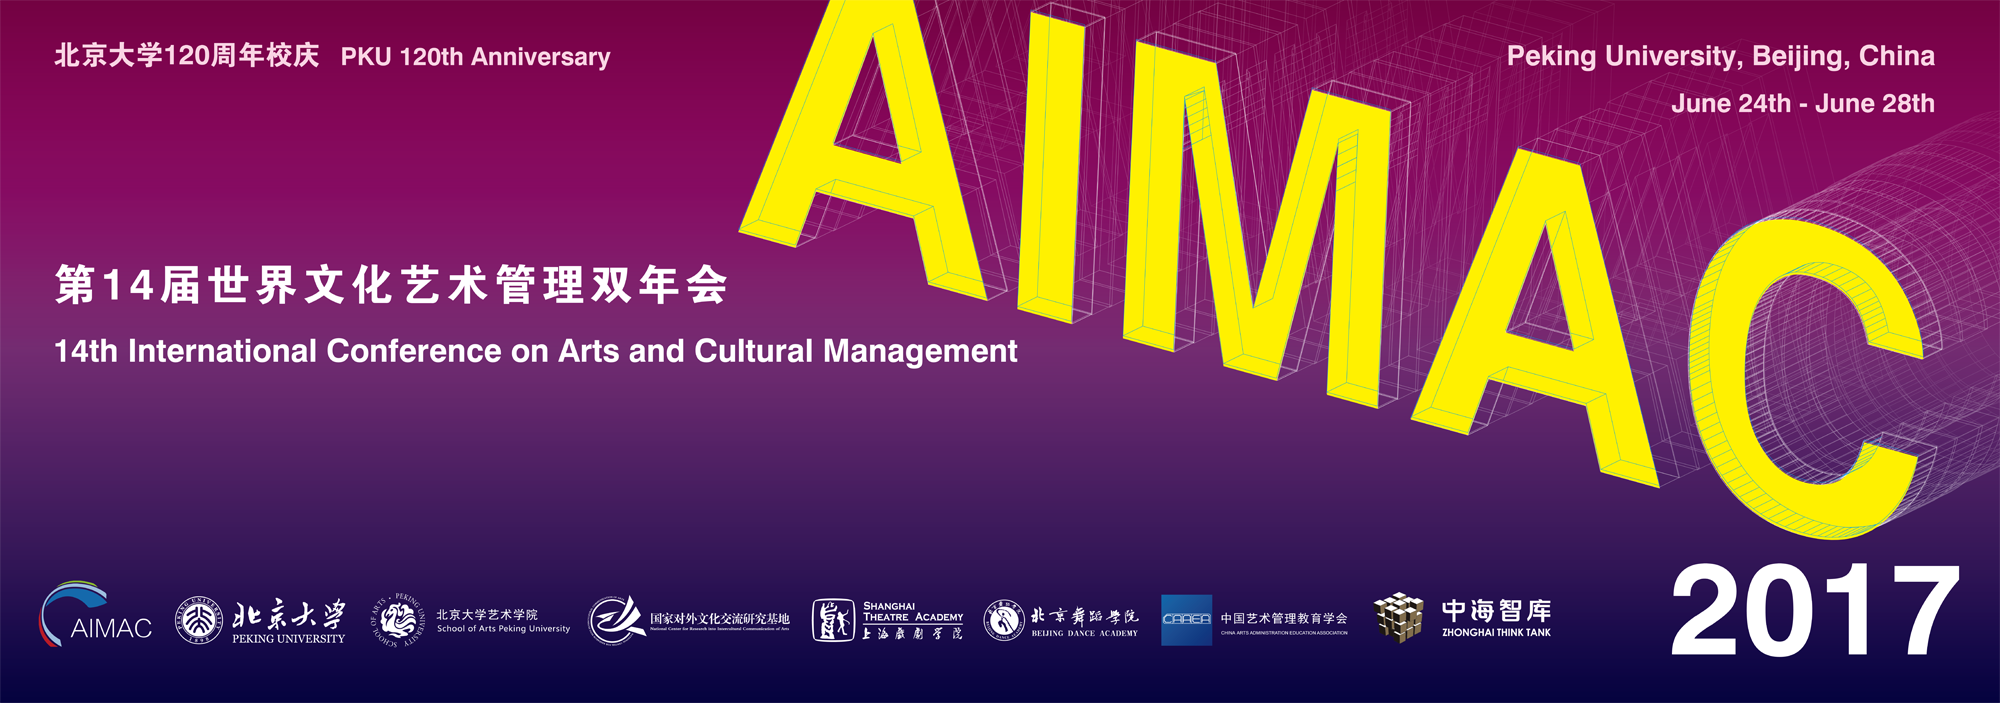 第十四届世界文化艺术管理双年会即将在北京大学开幕